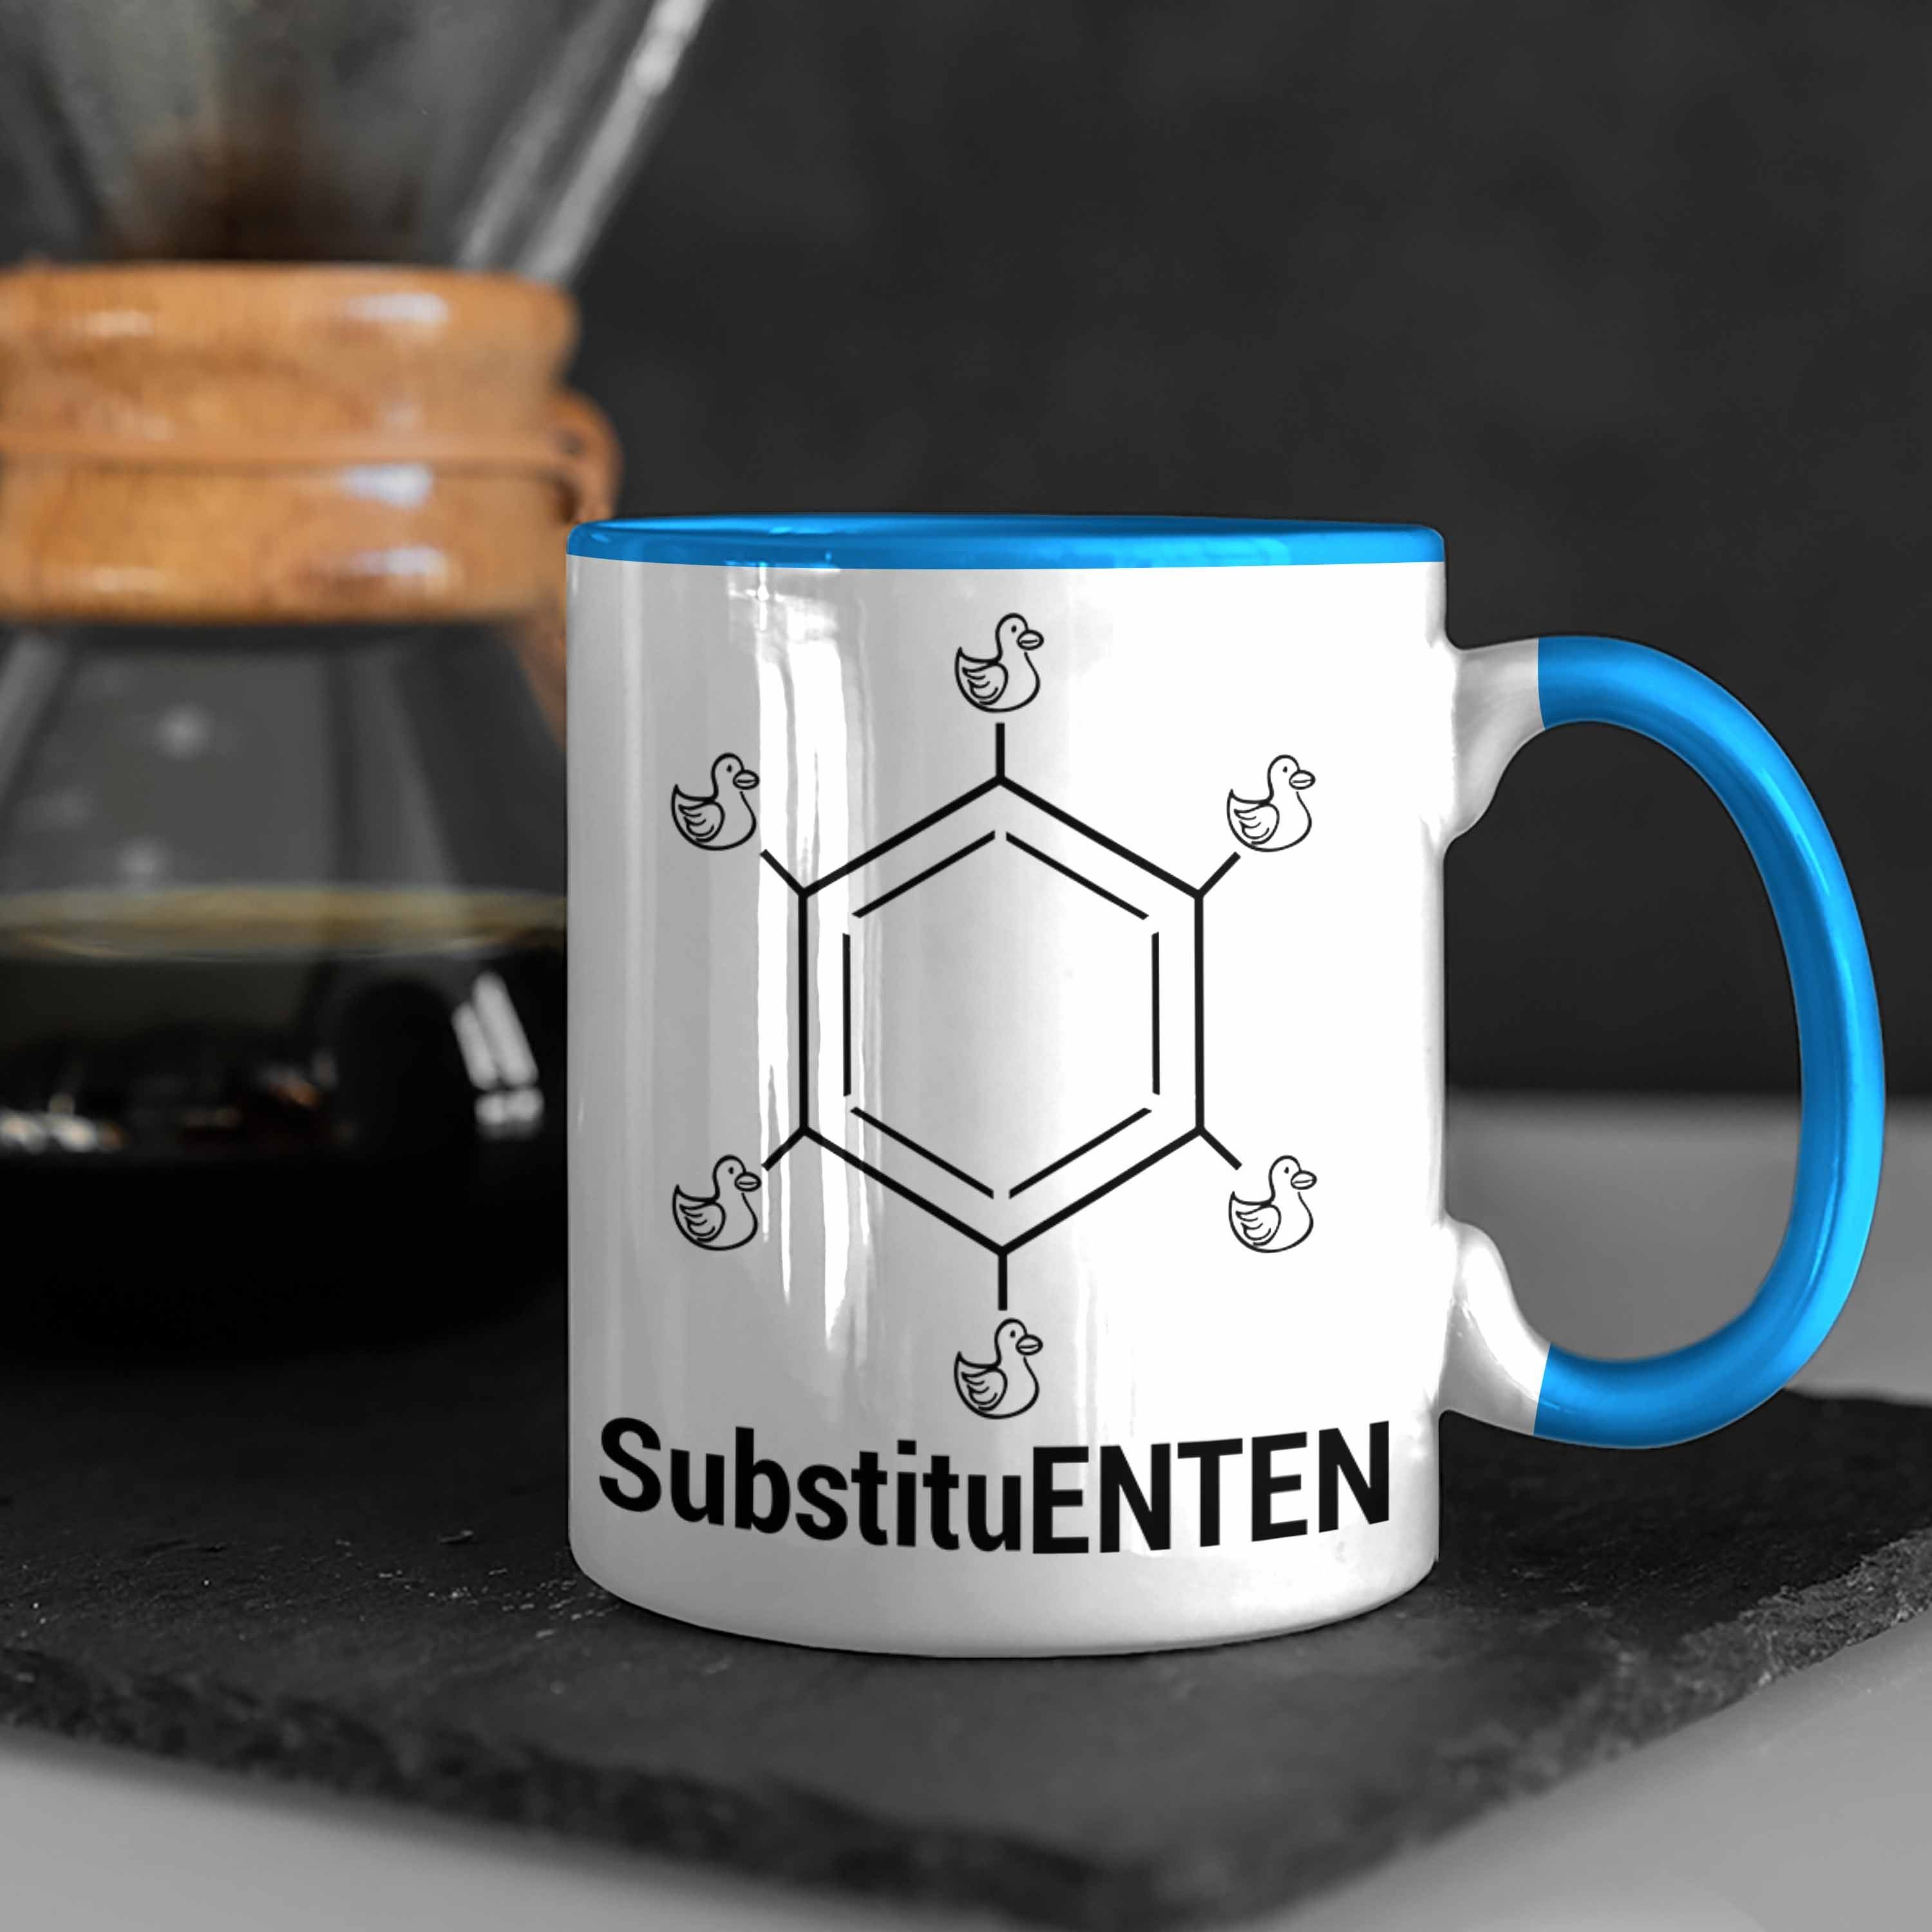 Organische Tasse Blau Ente Kaffee Tasse Trendation Chemiker SubstituENTEN Chemie Chemie Witz